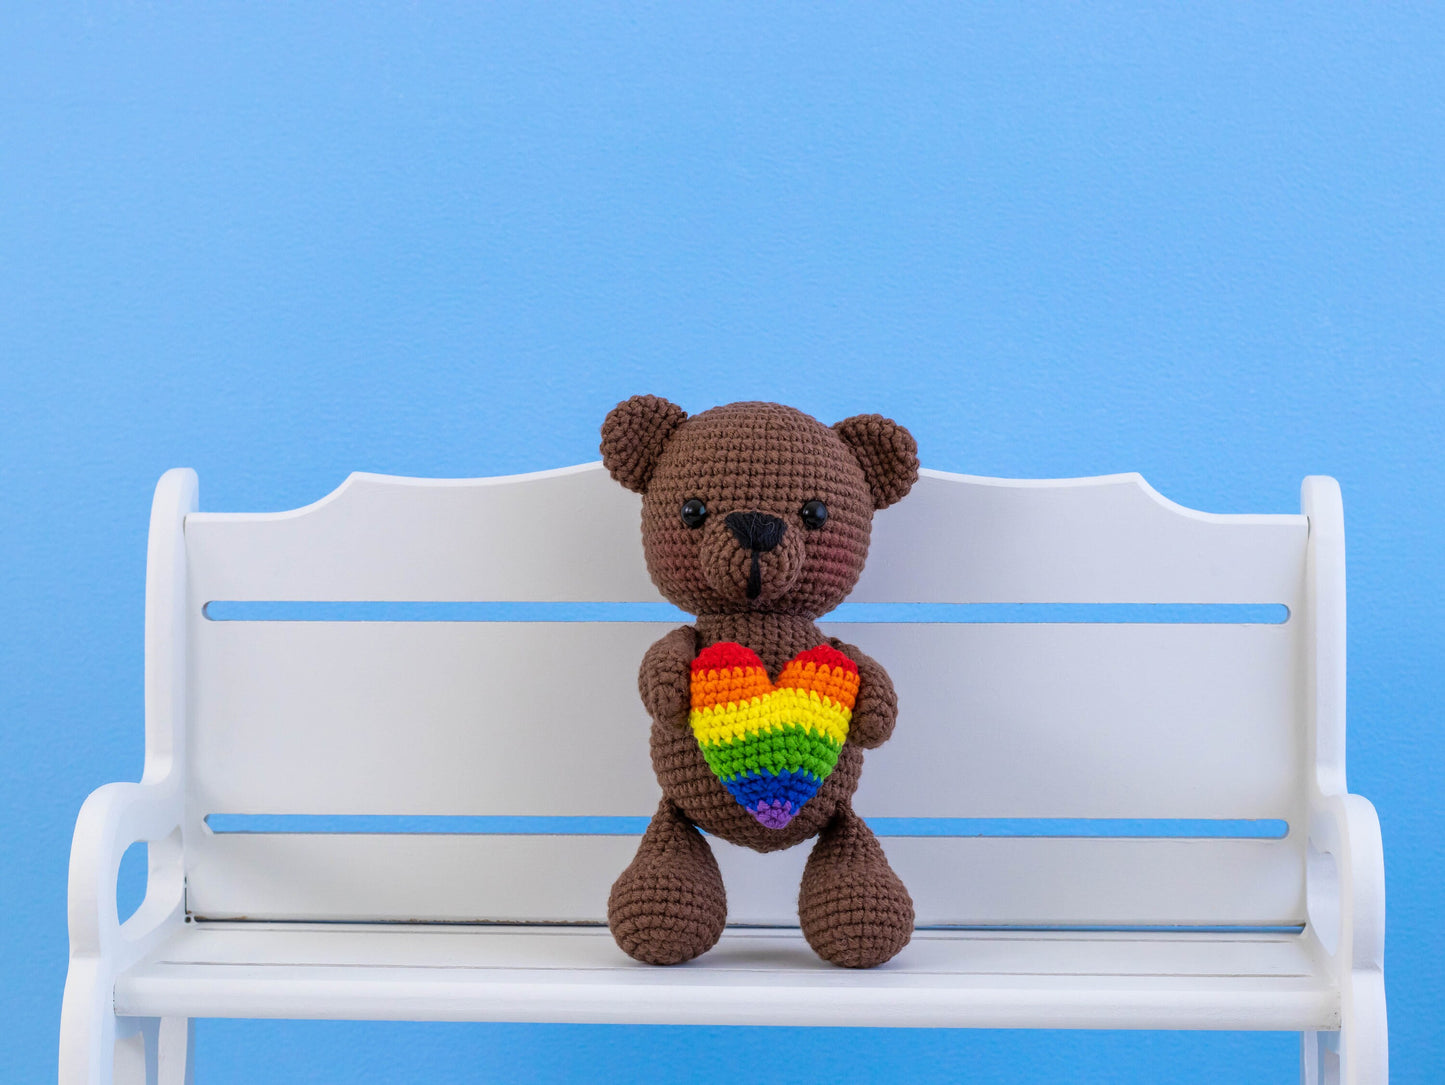 Crochet Teddy Bear Plush with LGBT Heart, Amigurumi Teddy Bear Plushie with Pride Colors, Crochet Animals, Knit Bear Plush Rainbow Heart